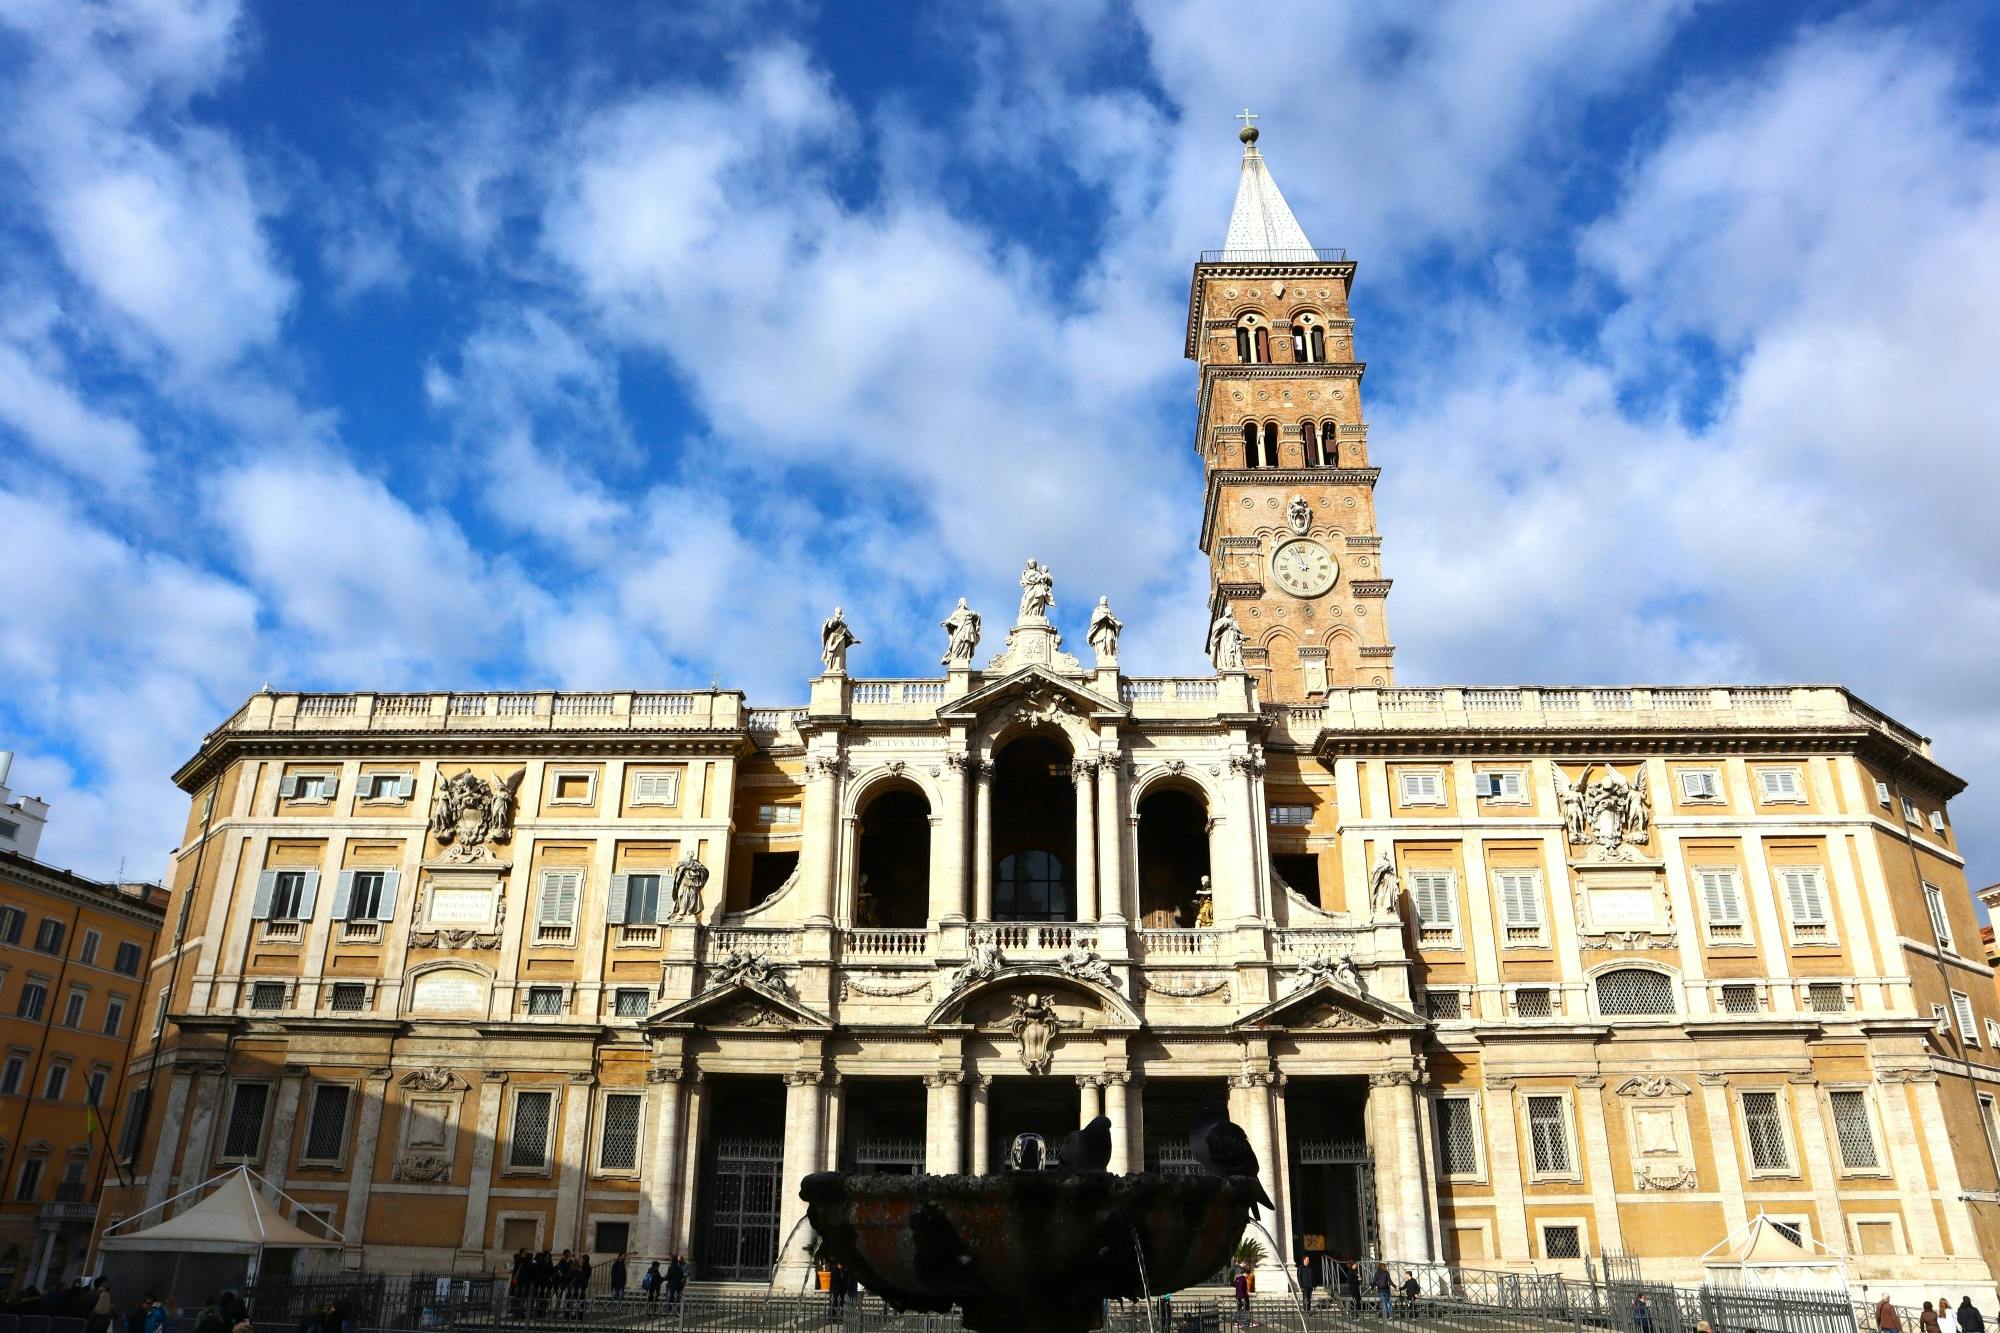 Entradas y visita guiada a la basílica de Santa Maria Maggiore de Roma